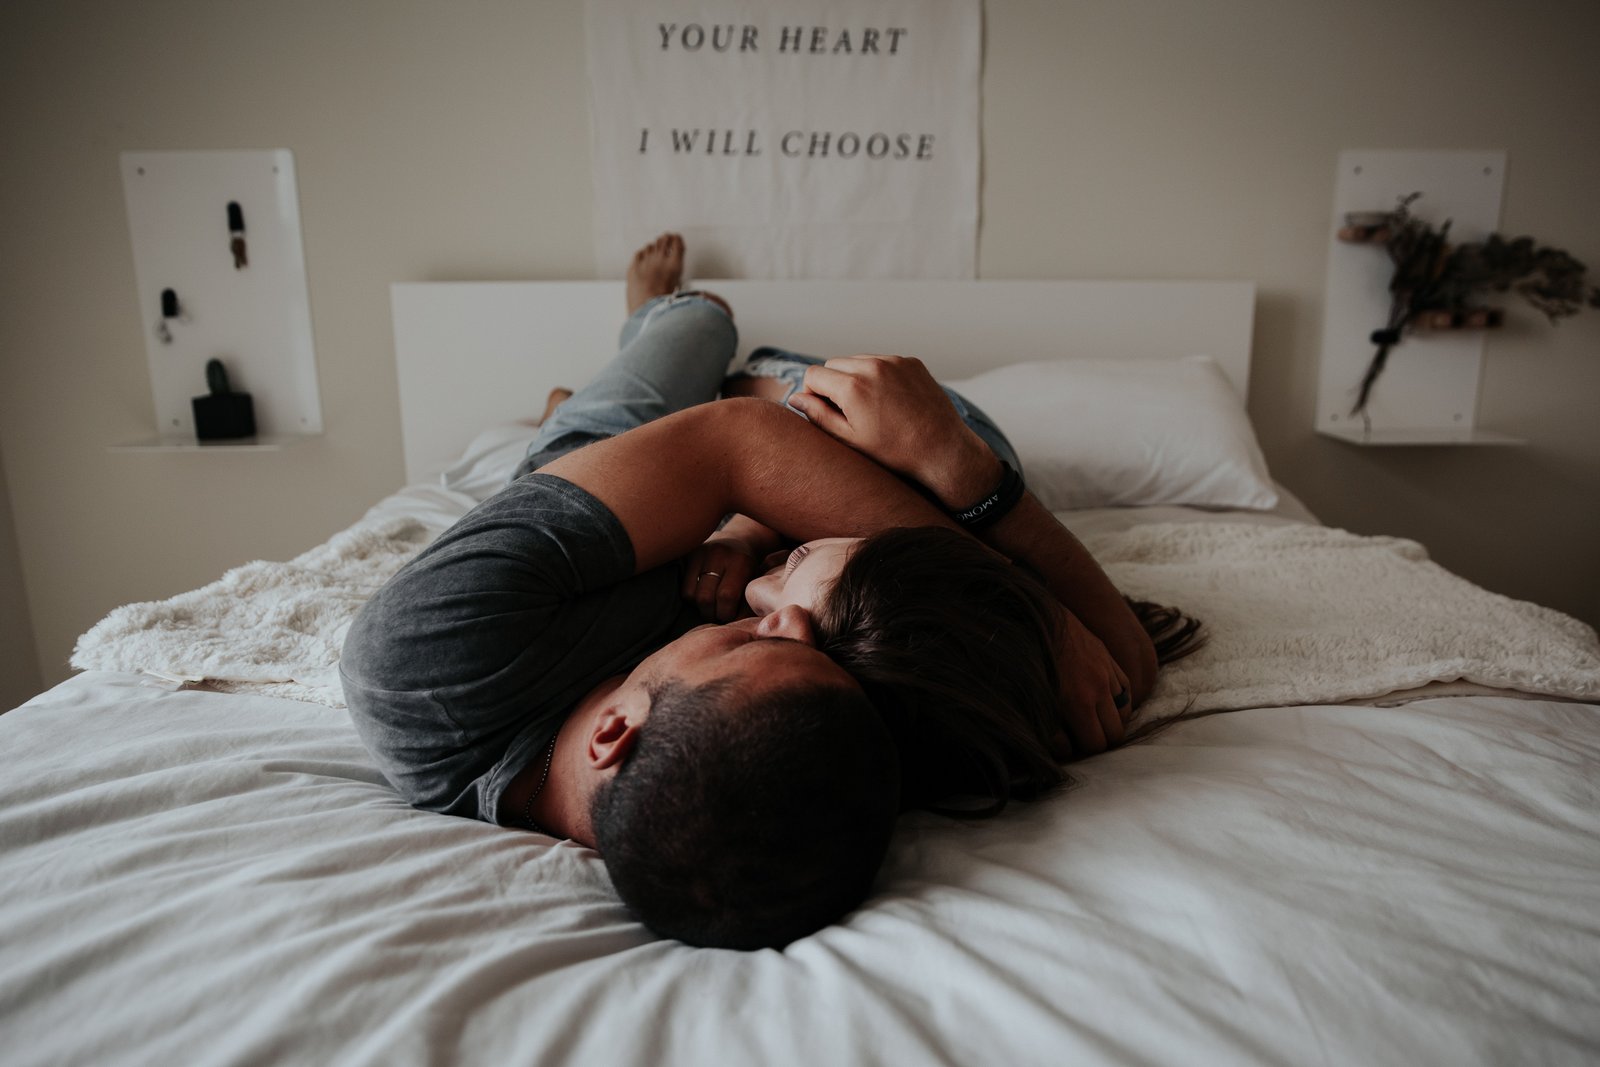 Ένας άνδρας χωρίς προβλήματα στυτικής δυσλειτουργίας ή ισχύος βρίσκεται στο κρεβάτι δίπλα σε μια γυναίκα, και οι δύο αγκαλιάζονται.